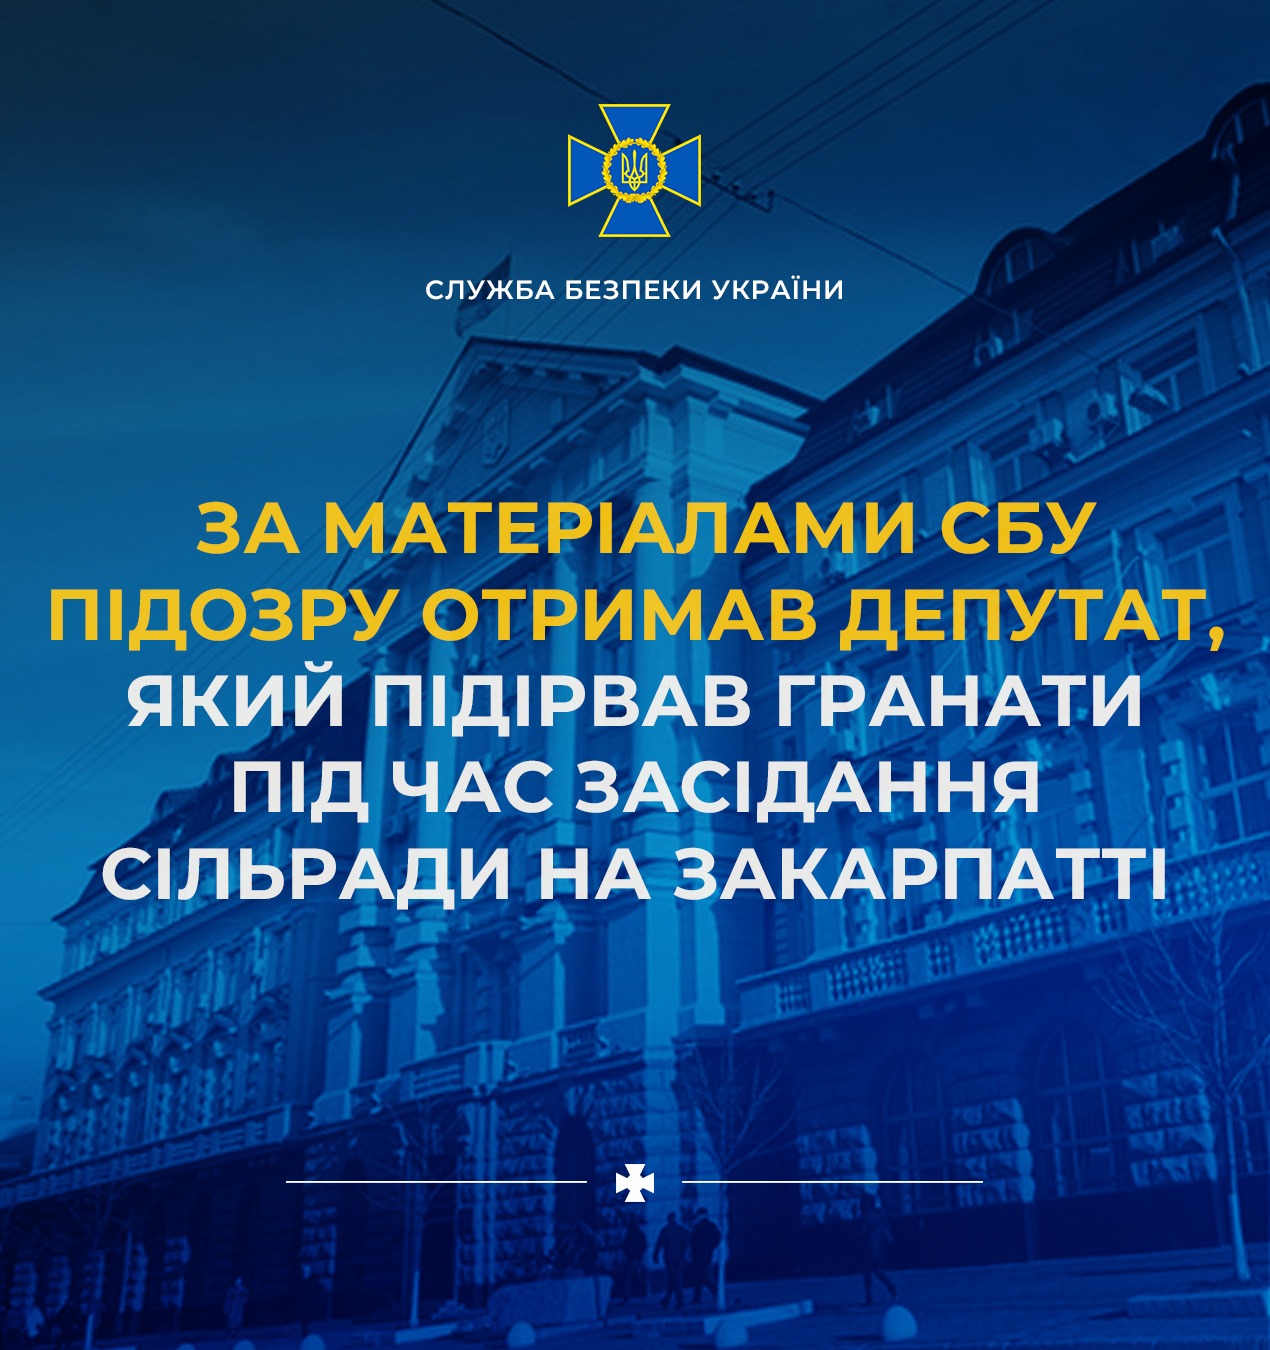 Депутату Батрину, який опритомнів, СБУ повідомила про підозру в скоєнні терористичного акту